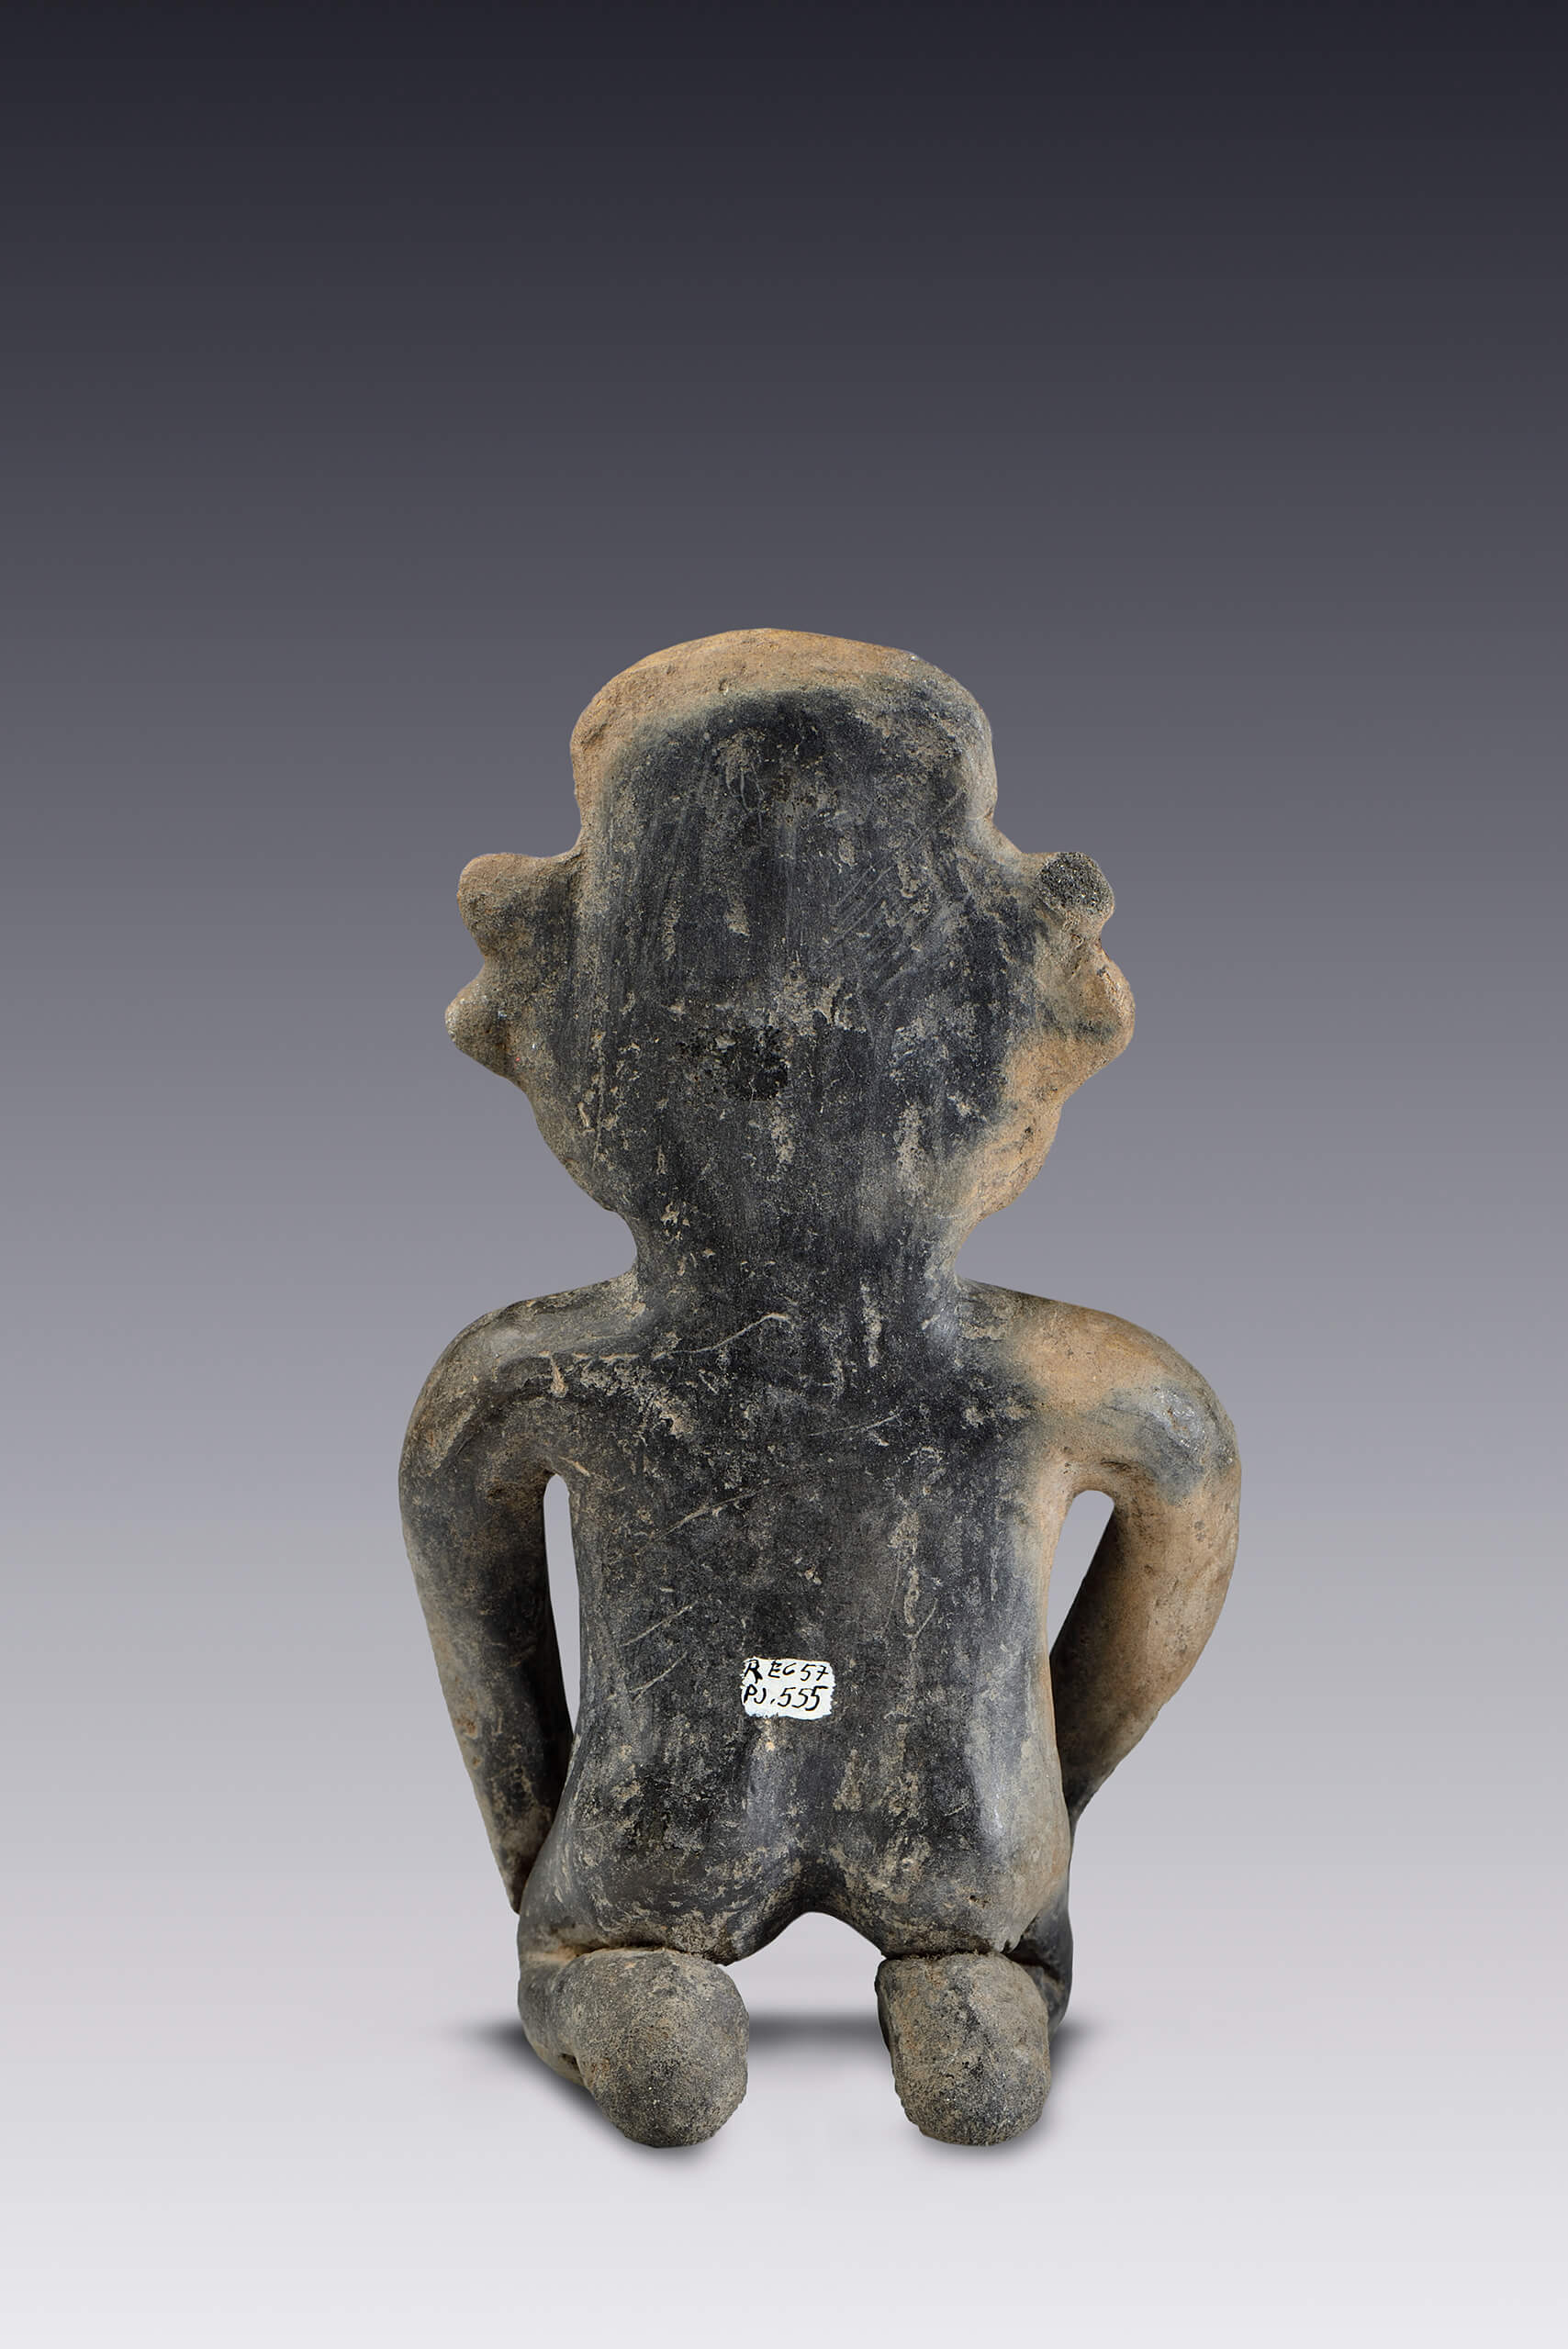 Mujer con modificación cefálica | El México antiguo. Salas de Arte Prehispánico | Museo Amparo, Puebla